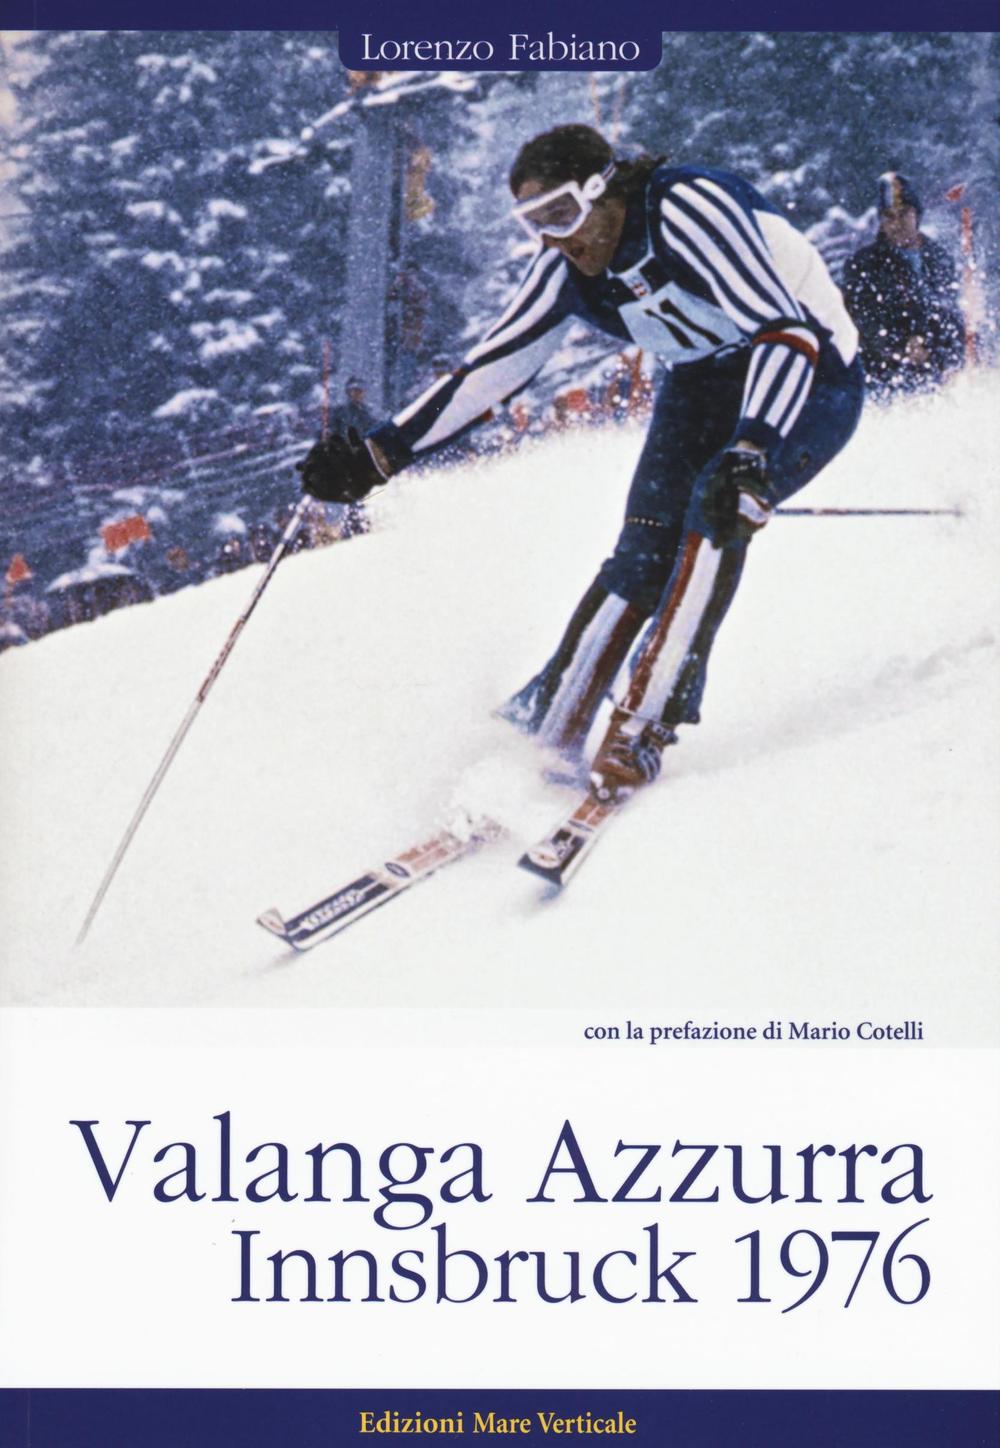 Libri Lorenzo Fabiano - Valanga Azzurra. Innsbruck 1976 NUOVO SIGILLATO, EDIZIONE DEL 10/11/2016 SUBITO DISPONIBILE